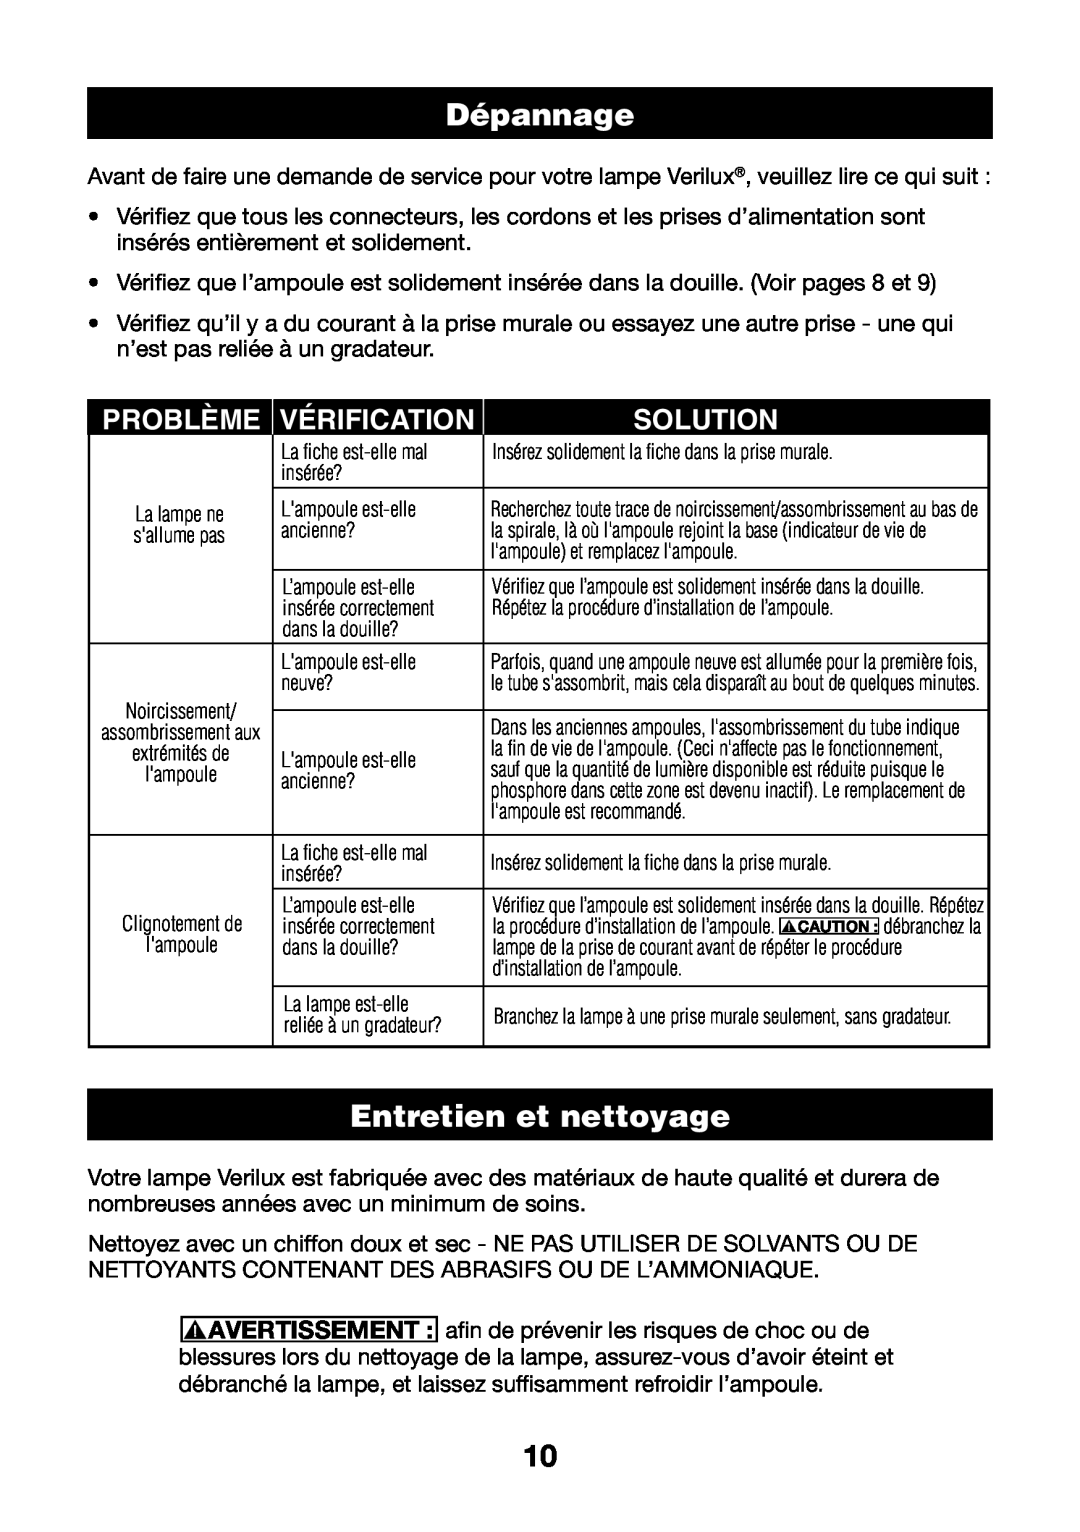 Verilux HPLD manual Dépannage, Entretien et nettoyage, Problème, Vérification, Solution, Avertissement 